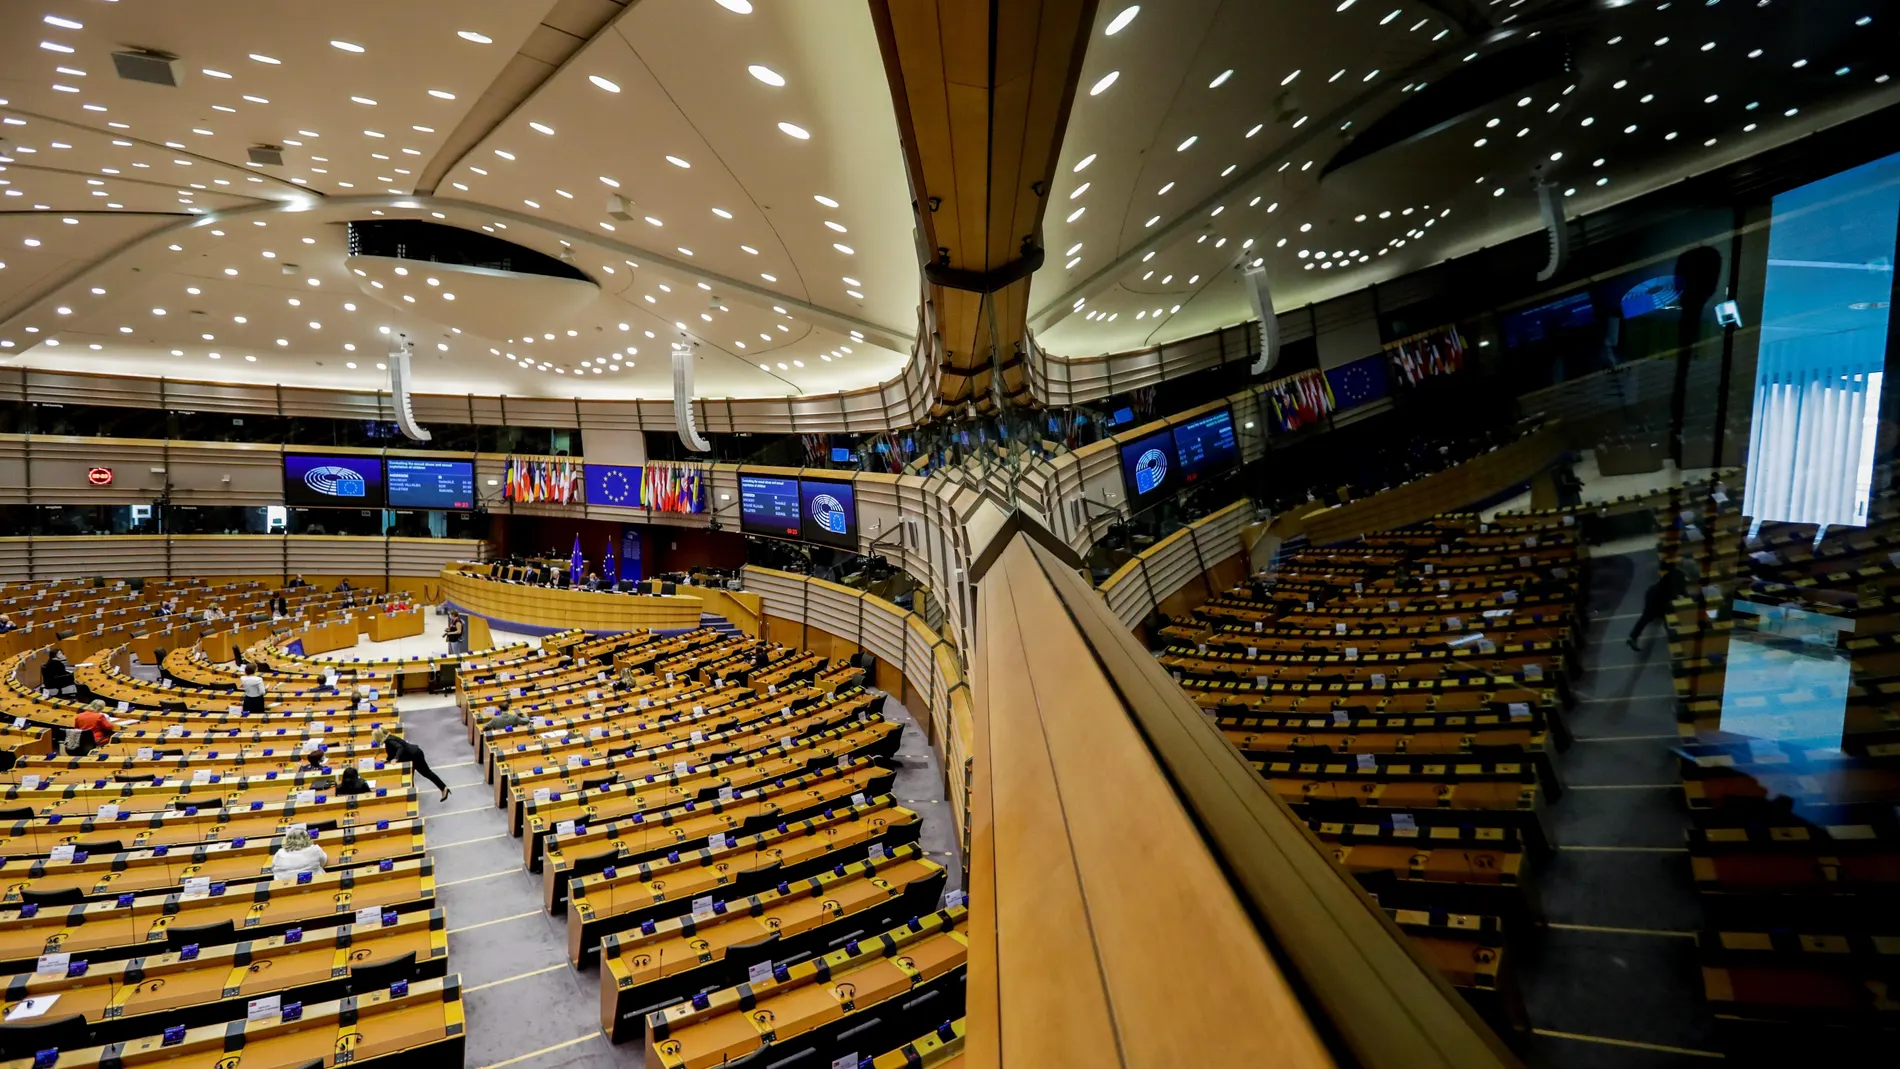 Vista general de la sala de plenos del Parlamento Europeo